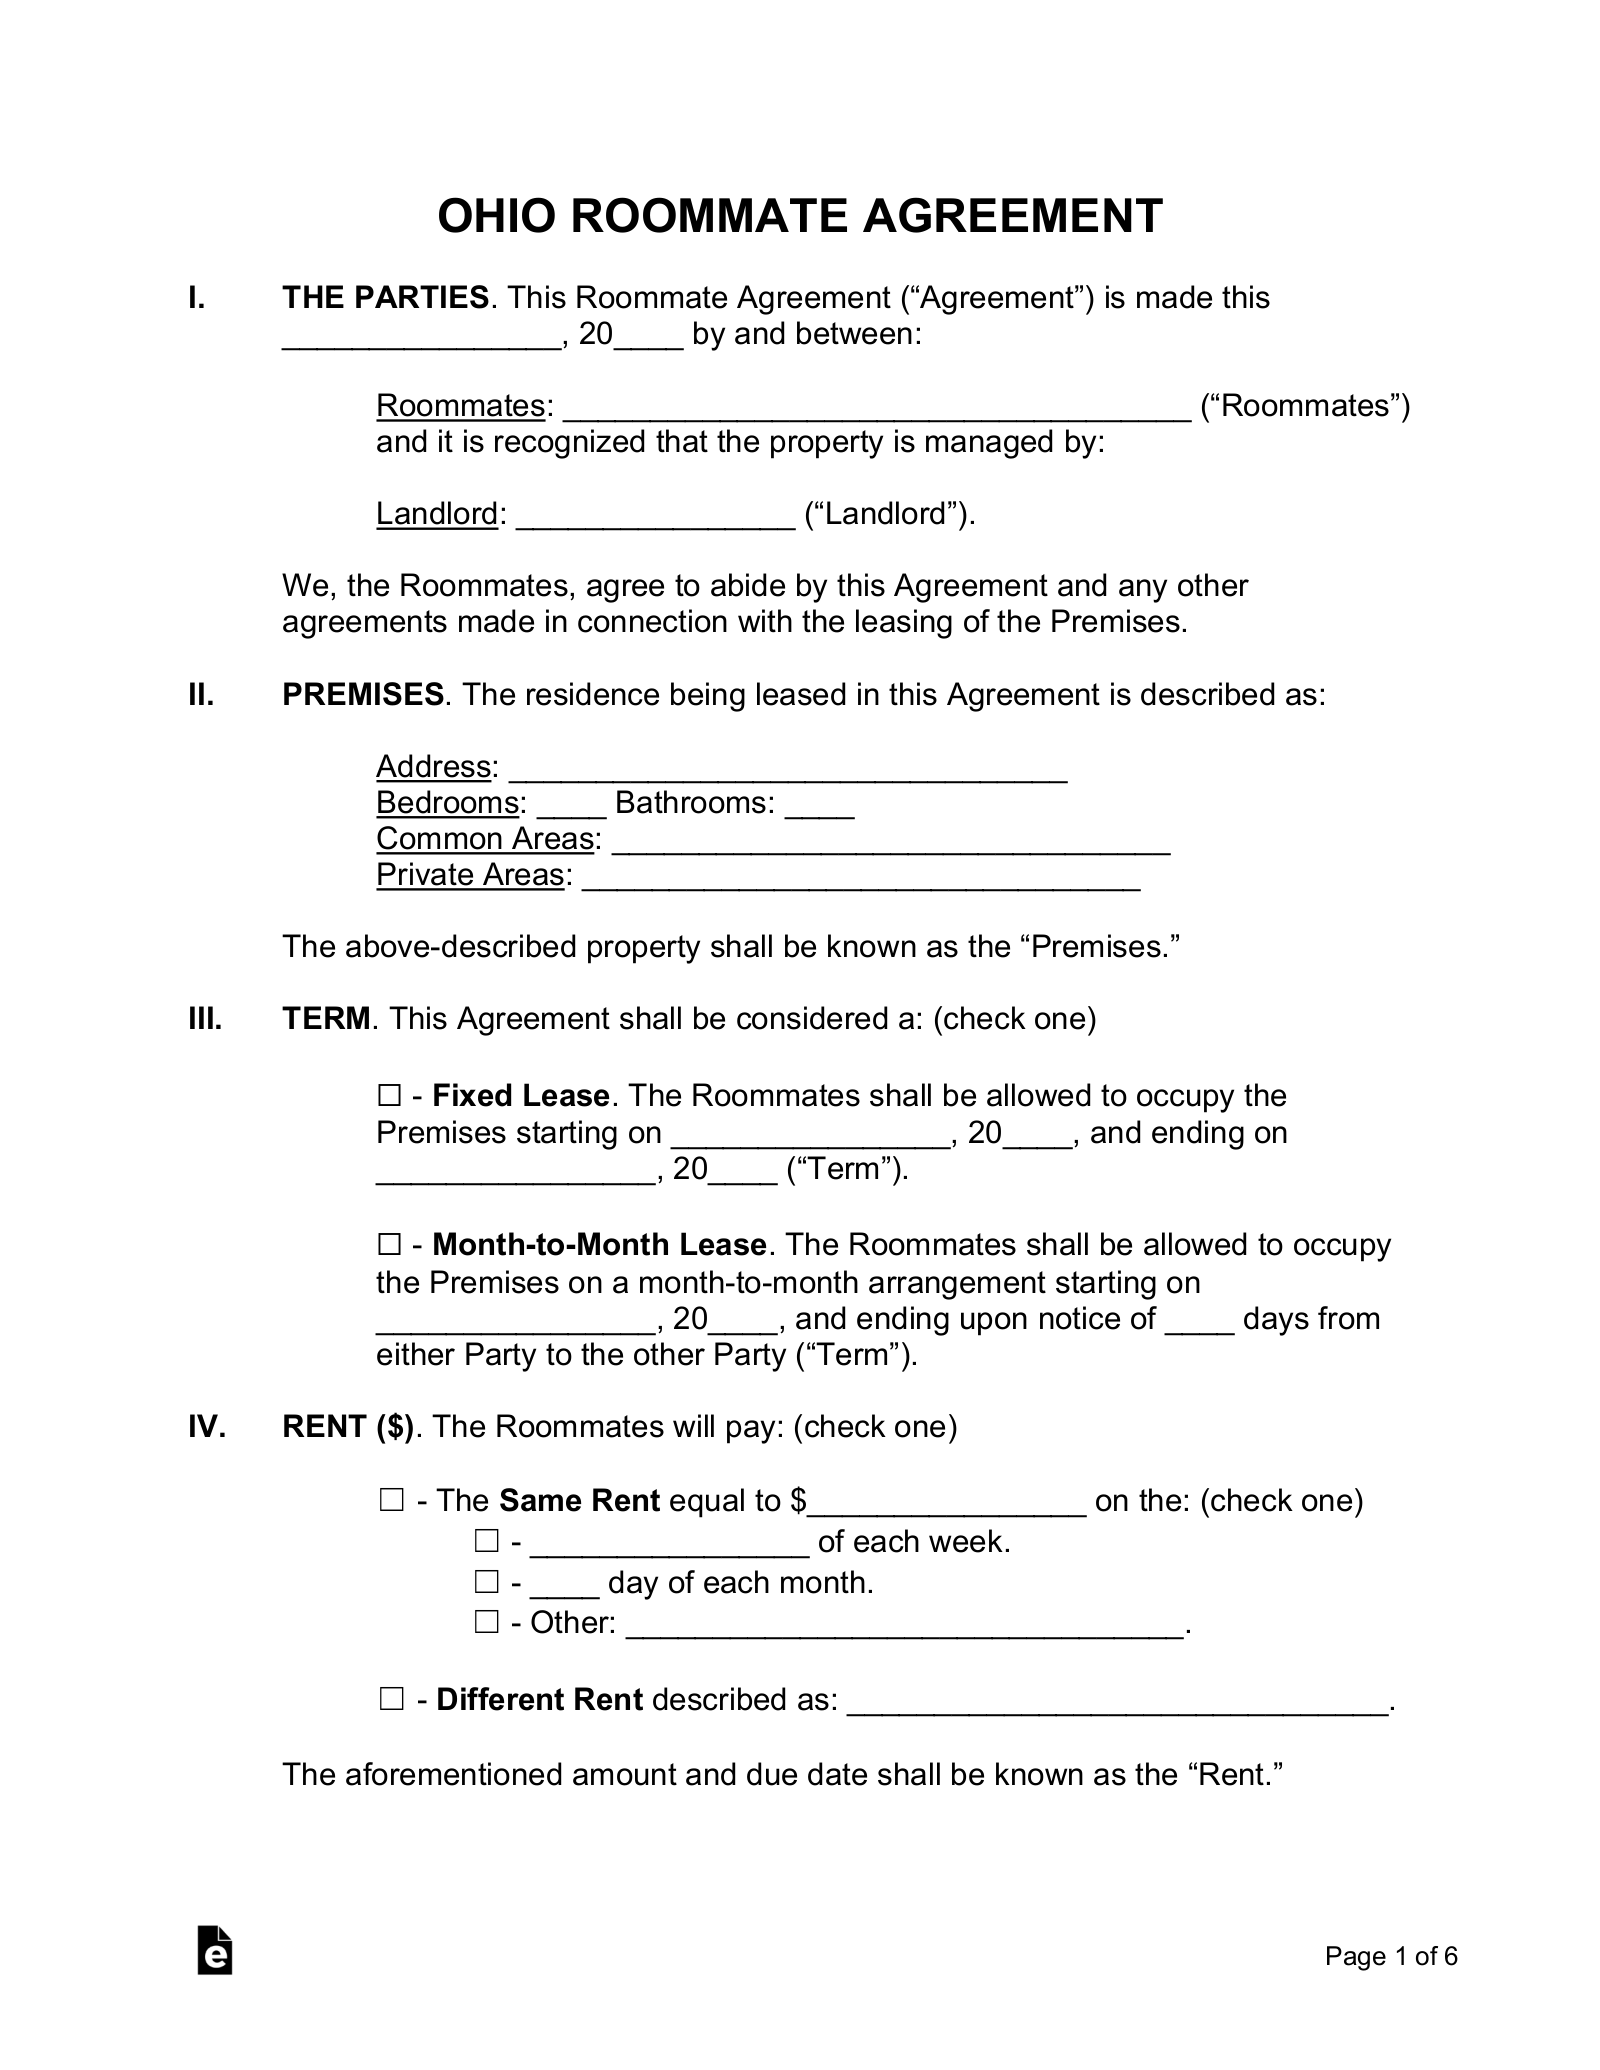 Ohio Roommate Agreement Form